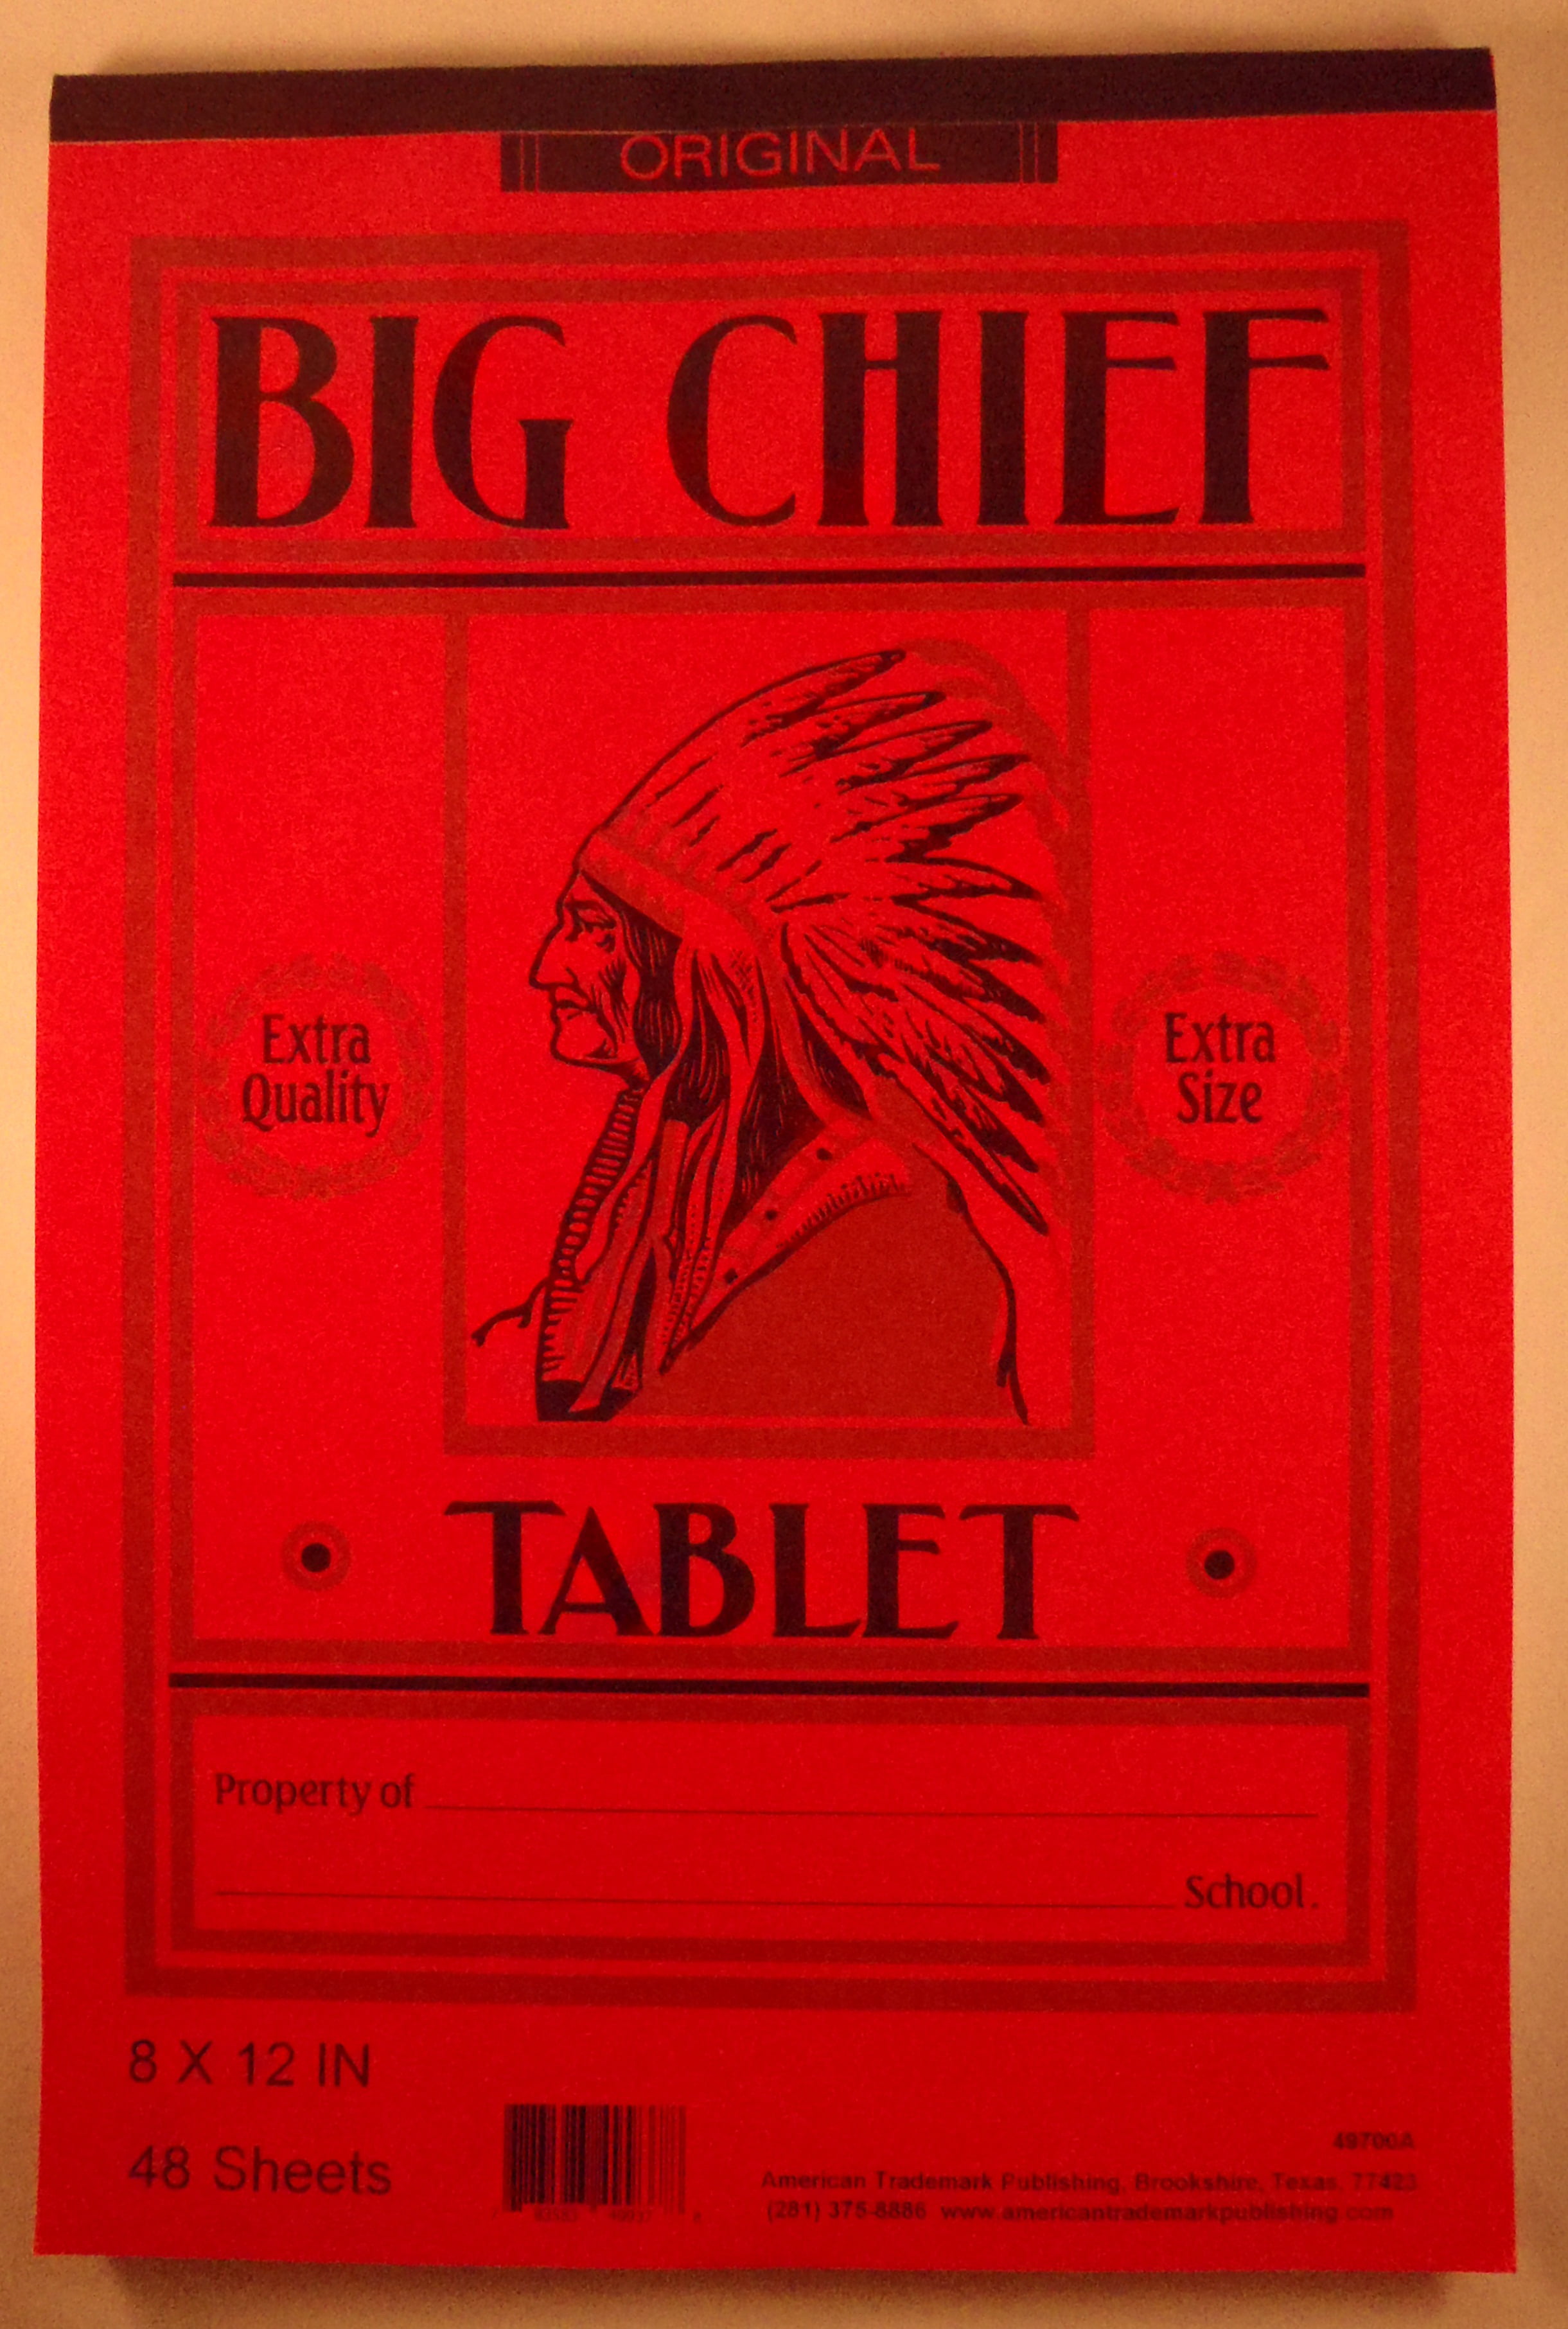 Chief Big Tablet